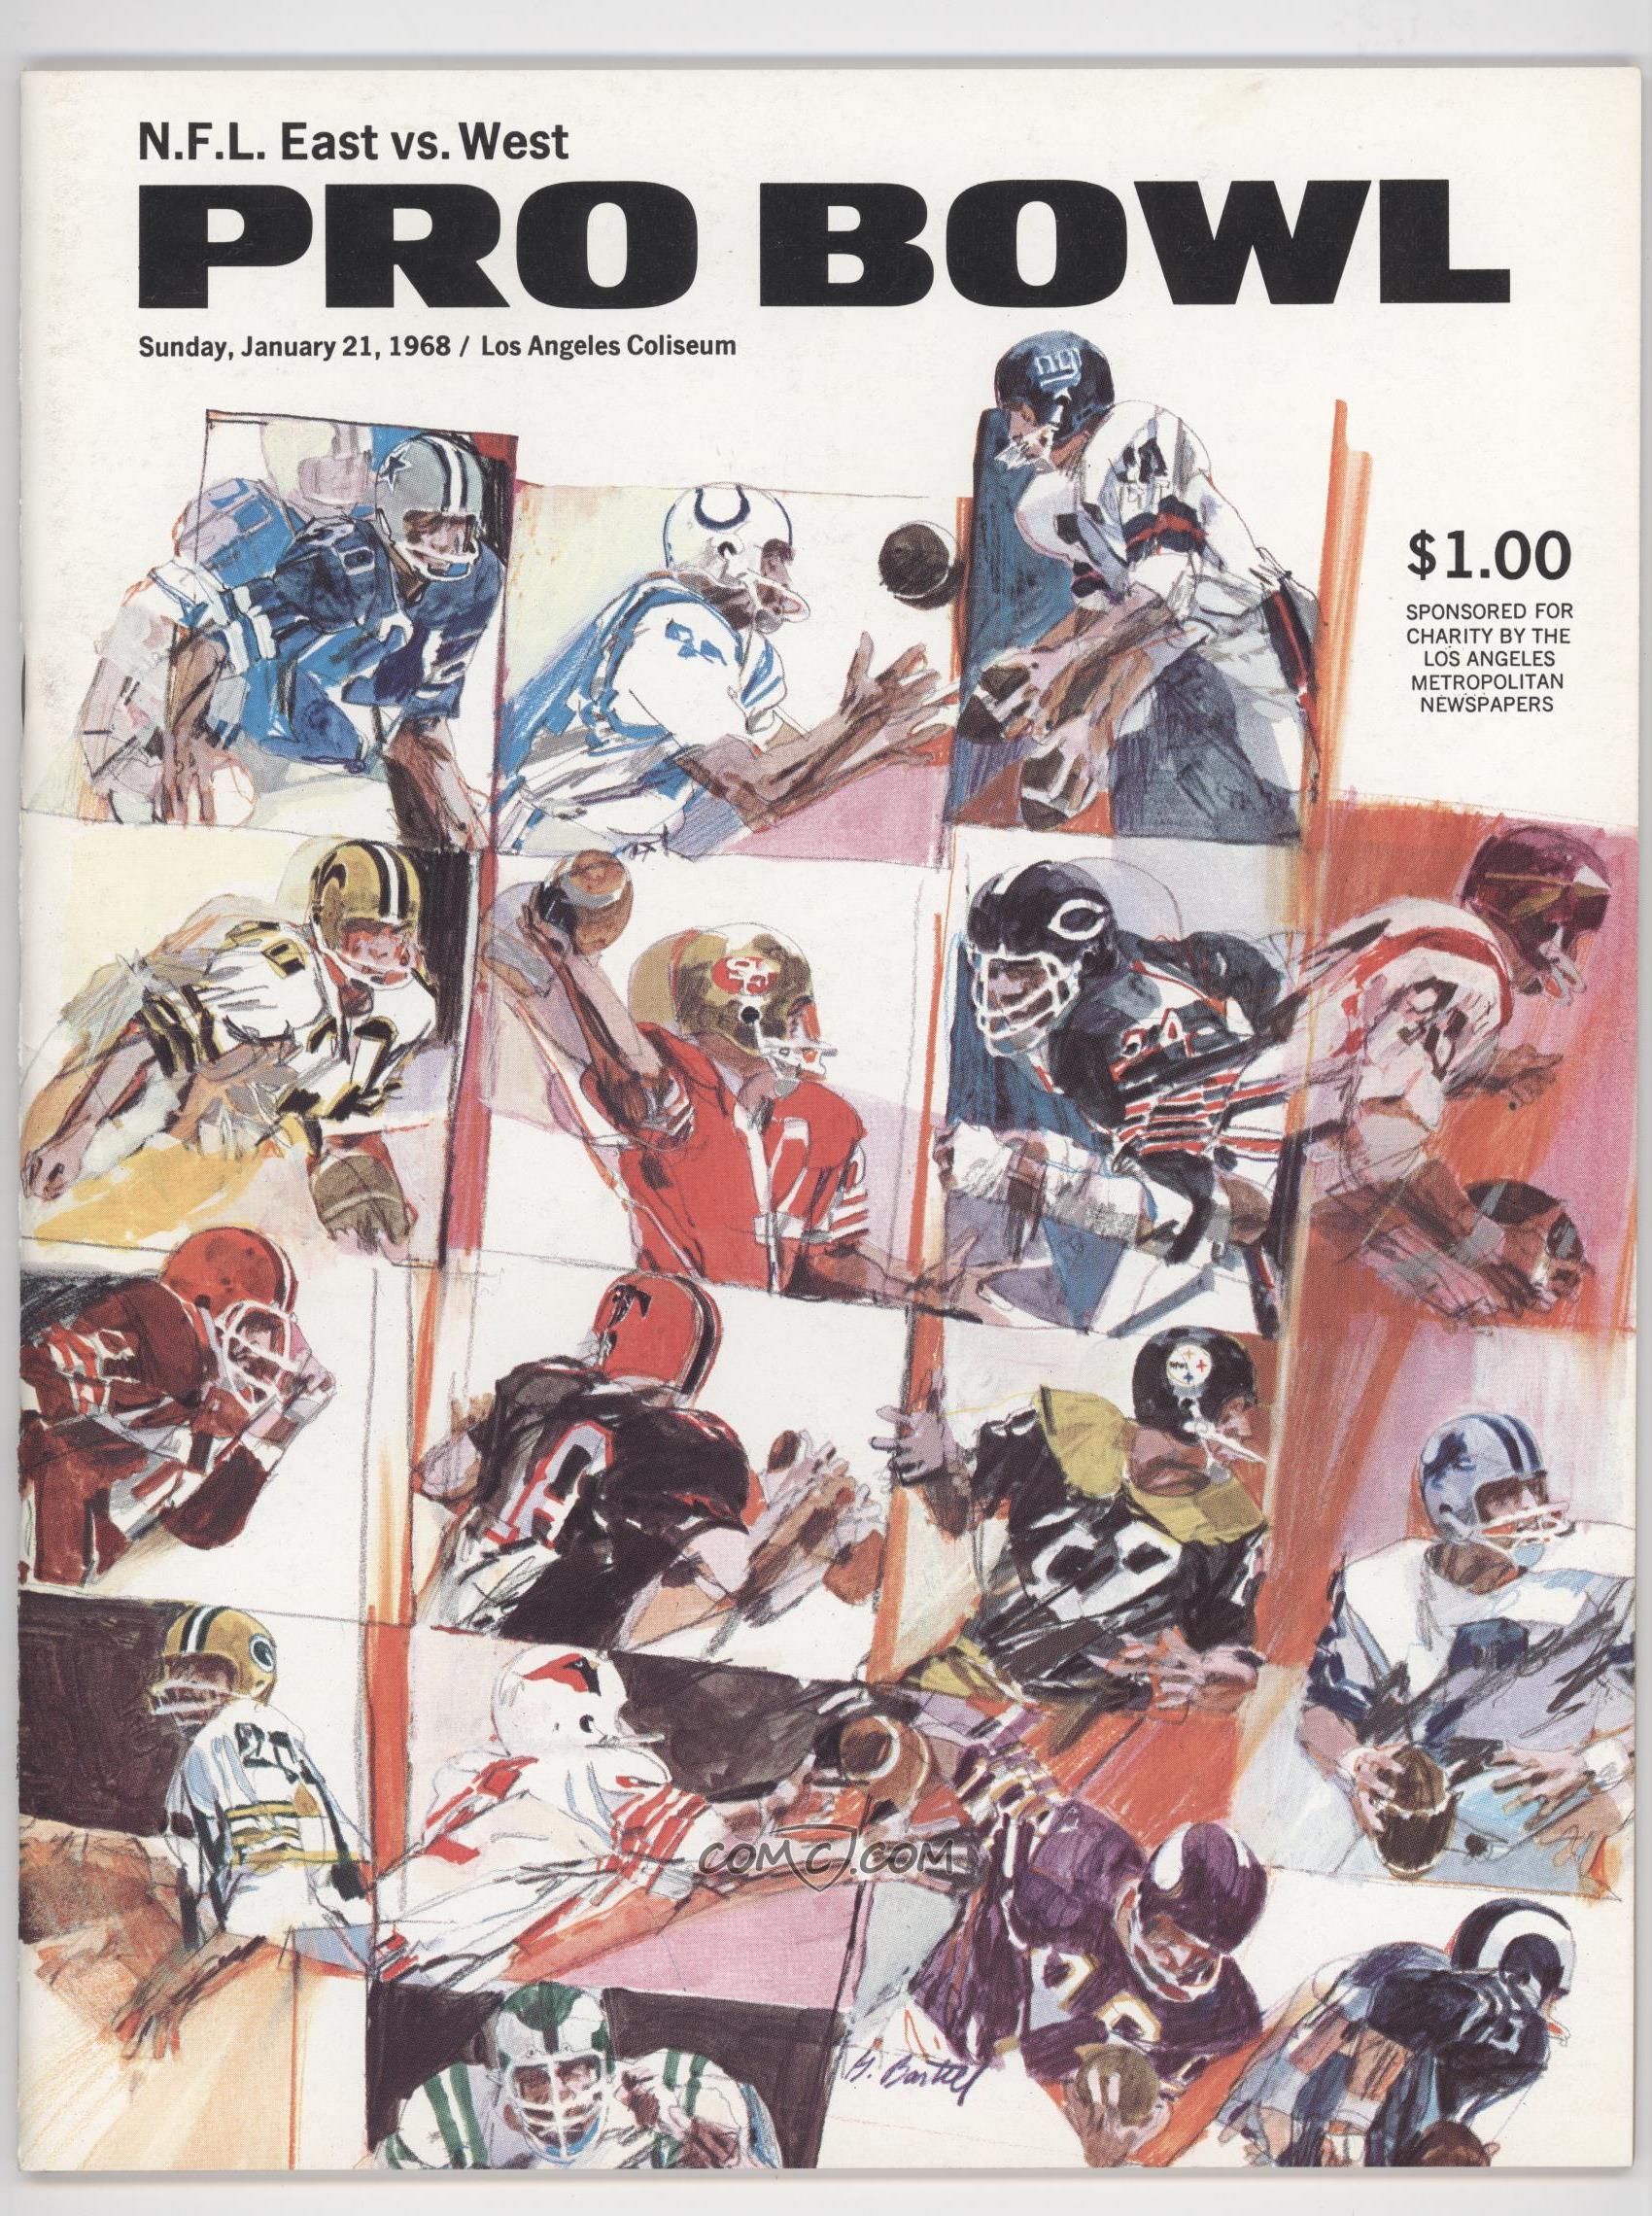 1950-69 NFL Pro Bowl - Game Programs #18 - 1967 Pro Bowl (January 21, 1968)1700 x 2280